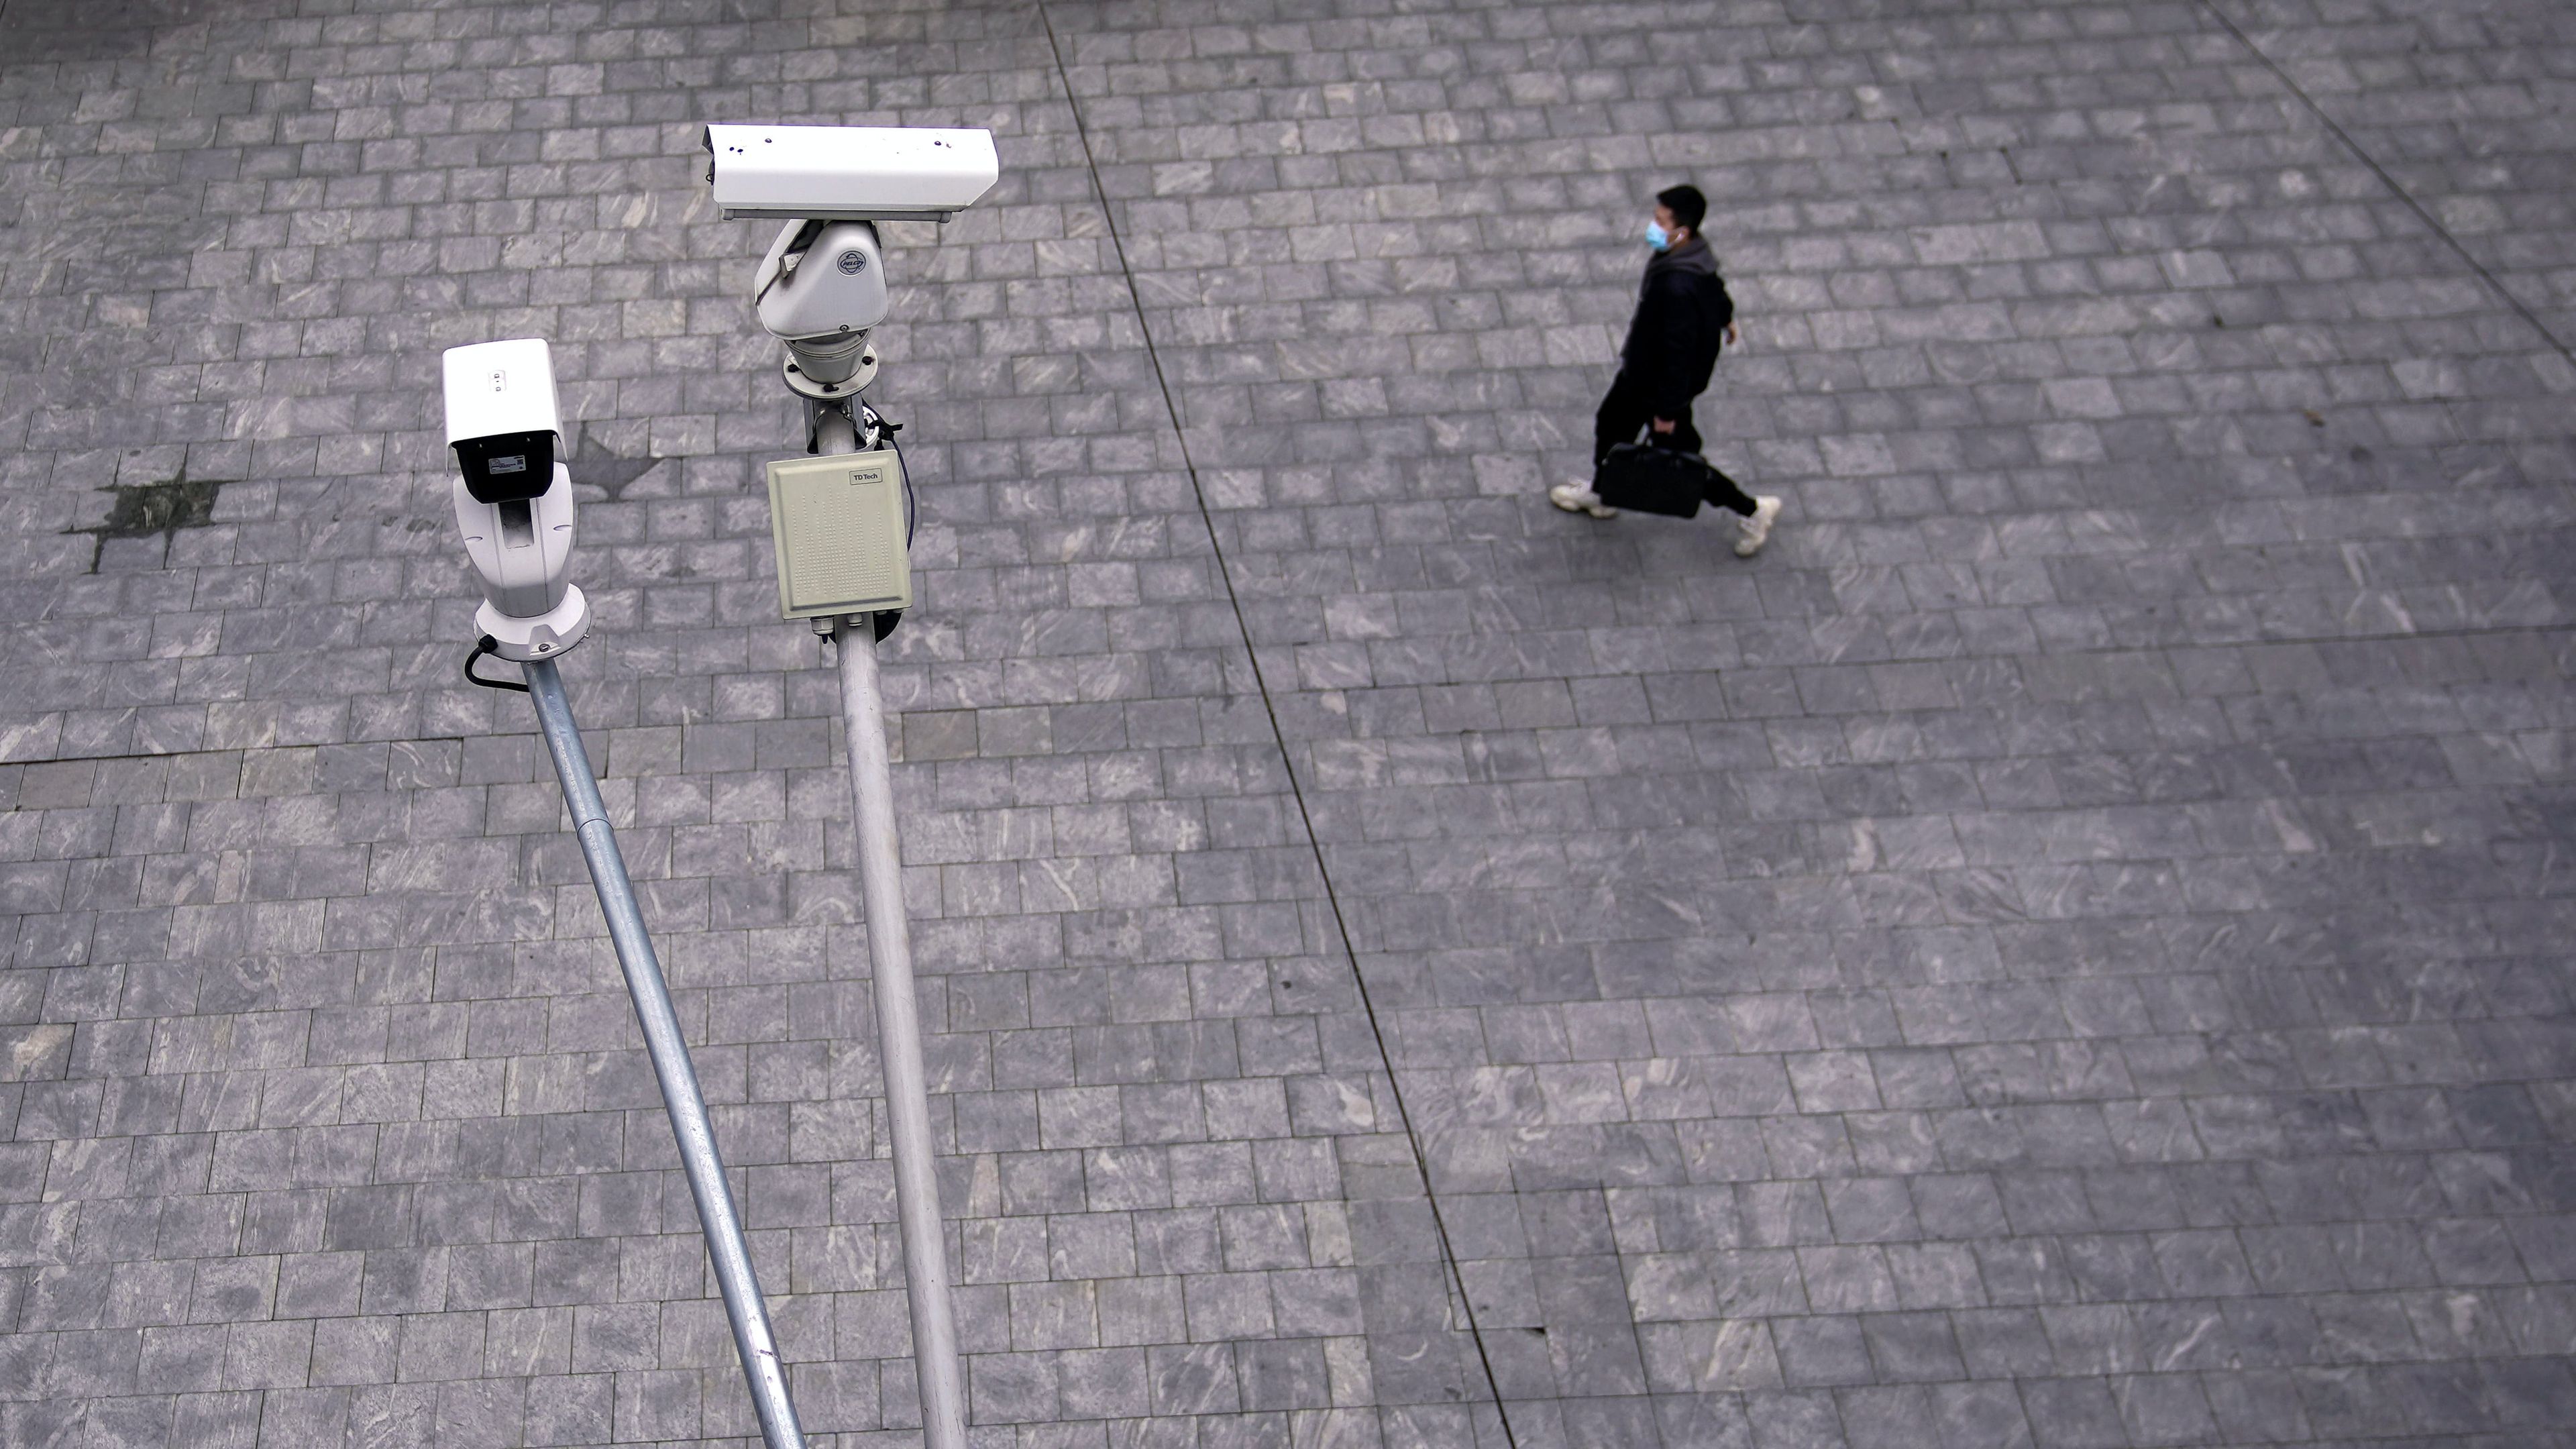 Unas cámaras de vigilancia en China, a finales de febrero, en pleno brote de coronavirus.